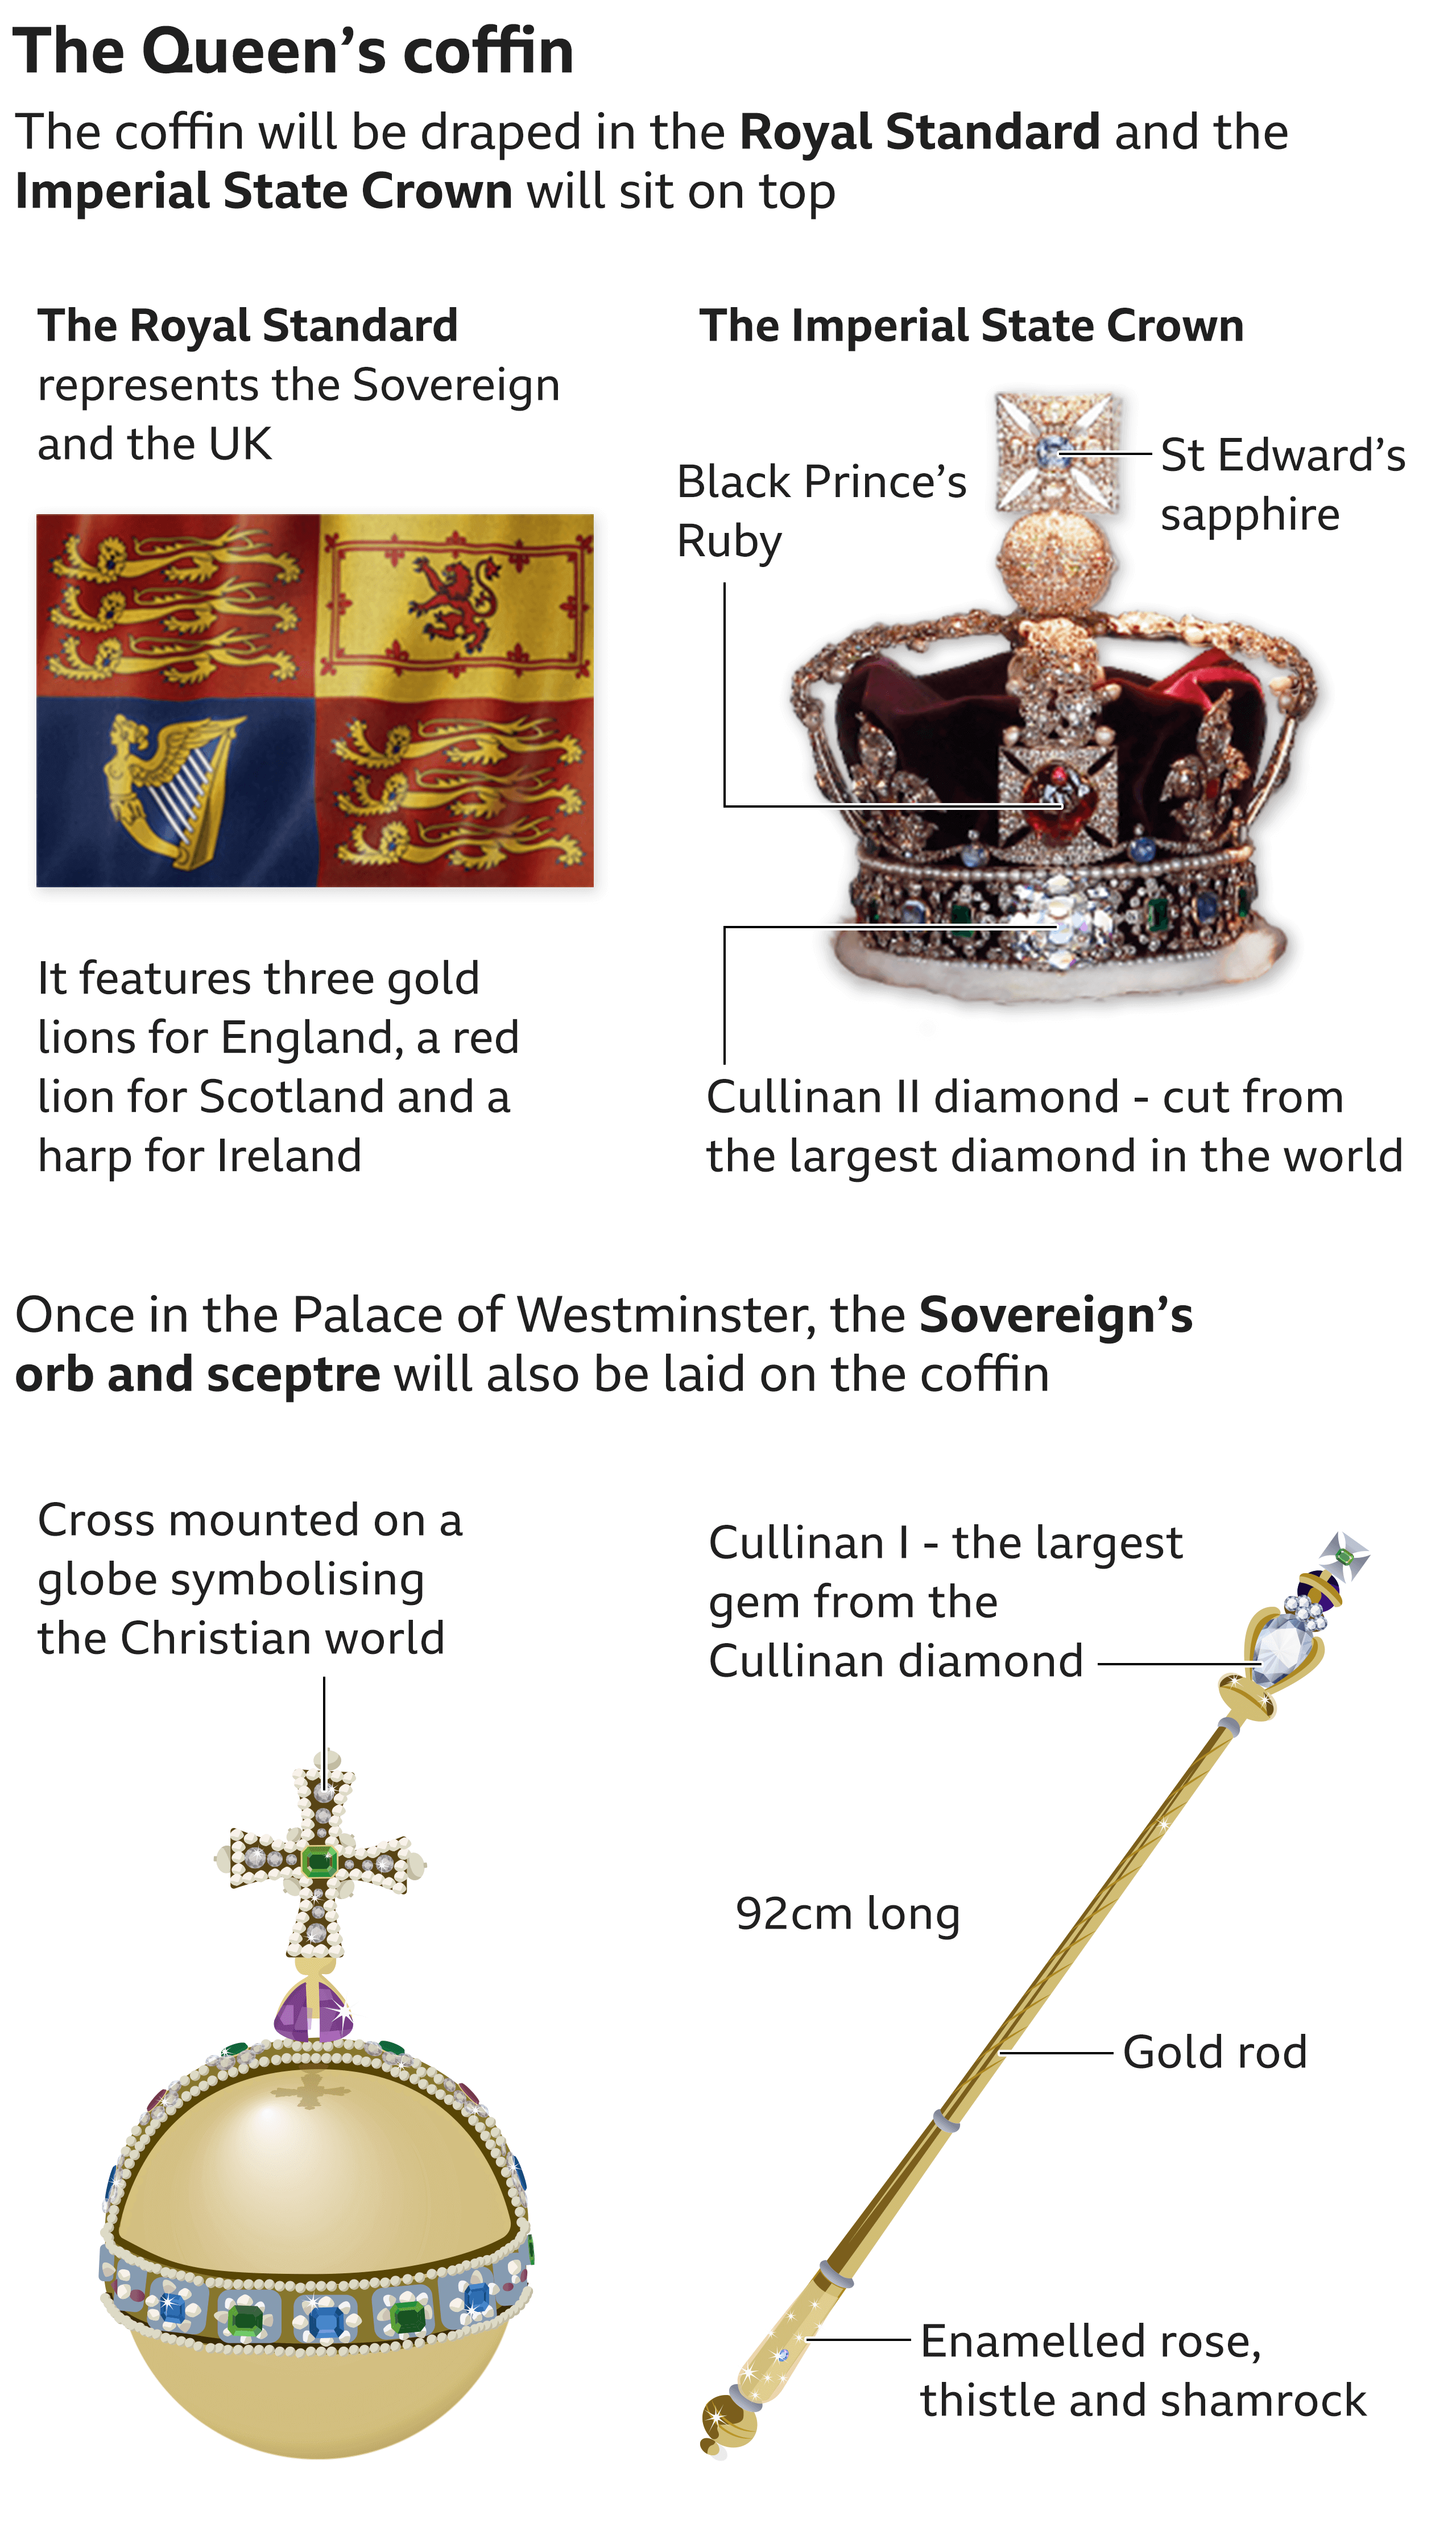 อินโฟกราฟิกแสดงสิ่งที่จะอยู่ด้านบนของโลงศพของราชินี: The Royal Standard;  มงกุฎแห่งรัฐอิมพีเรียล;  ลูกแก้วและคทาของกษัตริย์